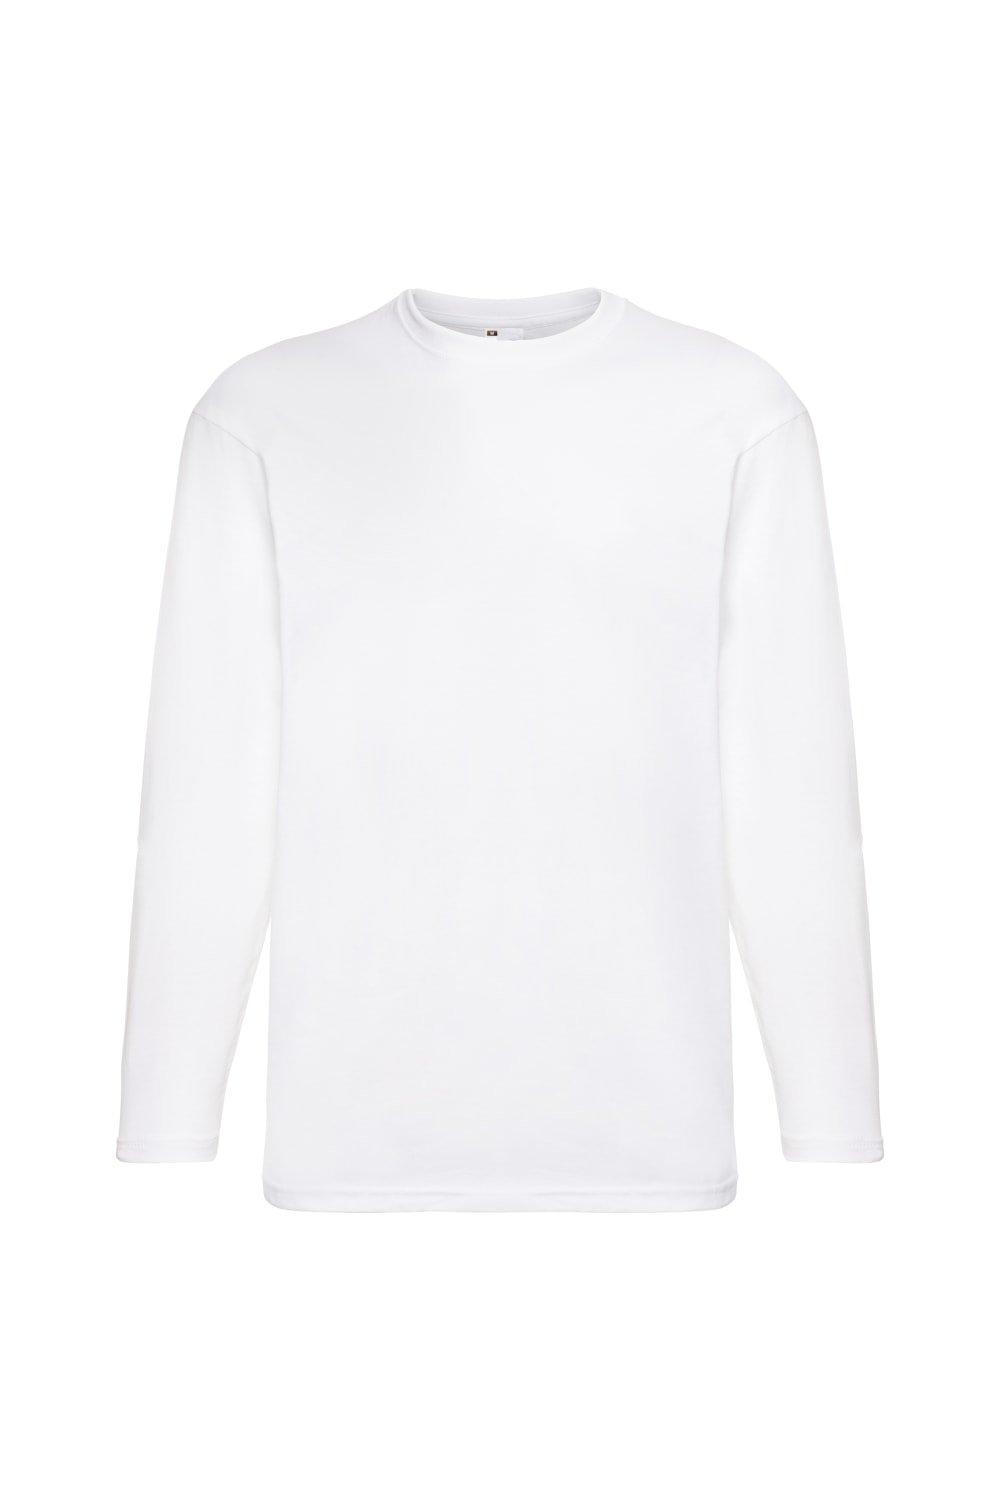 Повседневная футболка Value с длинным рукавом Universal Textiles, белый мужская футболка мишка спит 2xl серый меланж